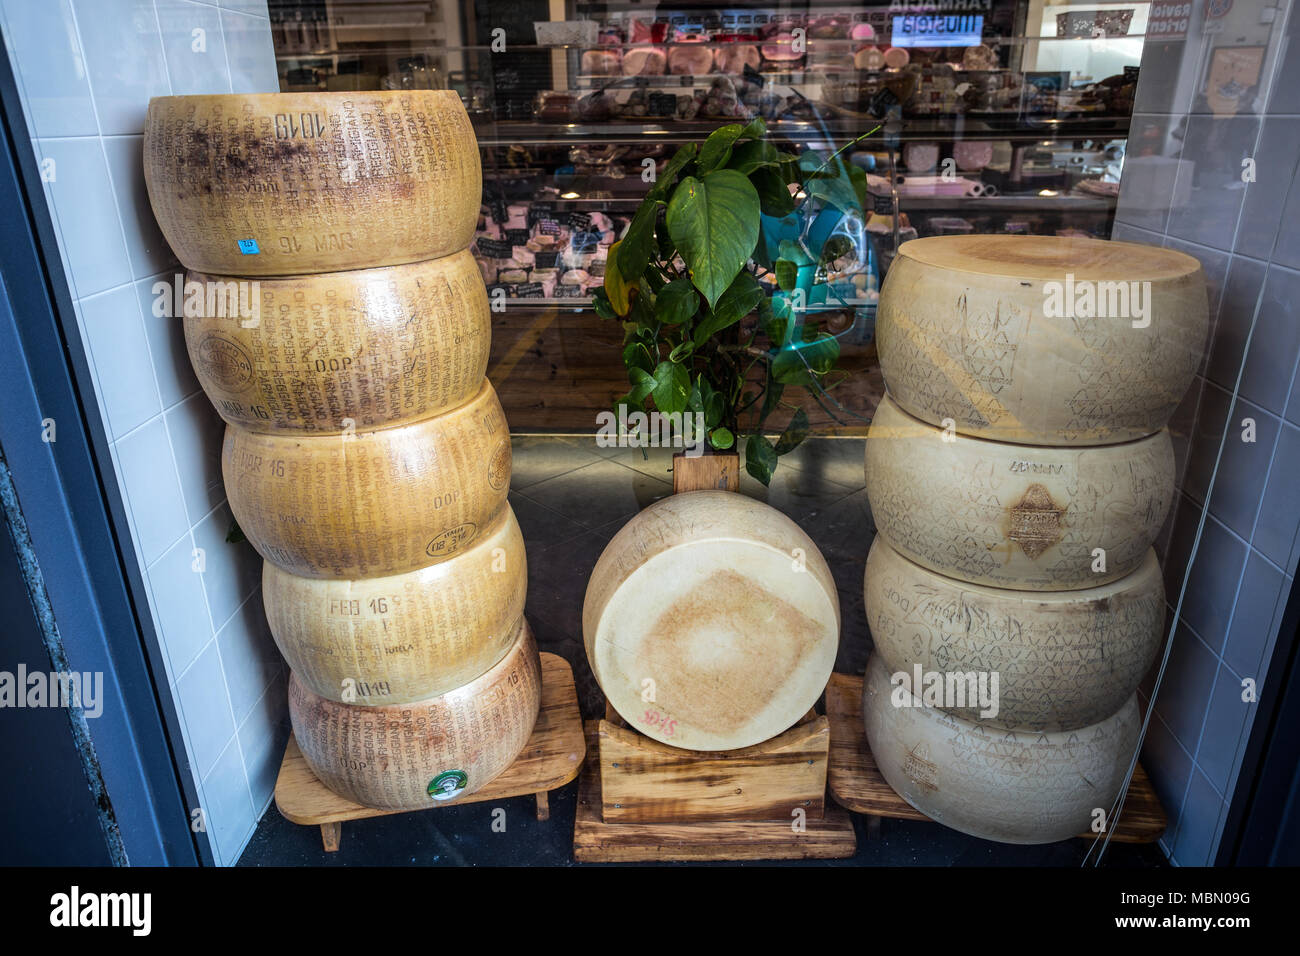 Gênes, Italie, le 5 avril 2018 - formes empilées Parmigiano Reggiano, le plus célèbre fromage italien en vente dans un magasin. Banque D'Images